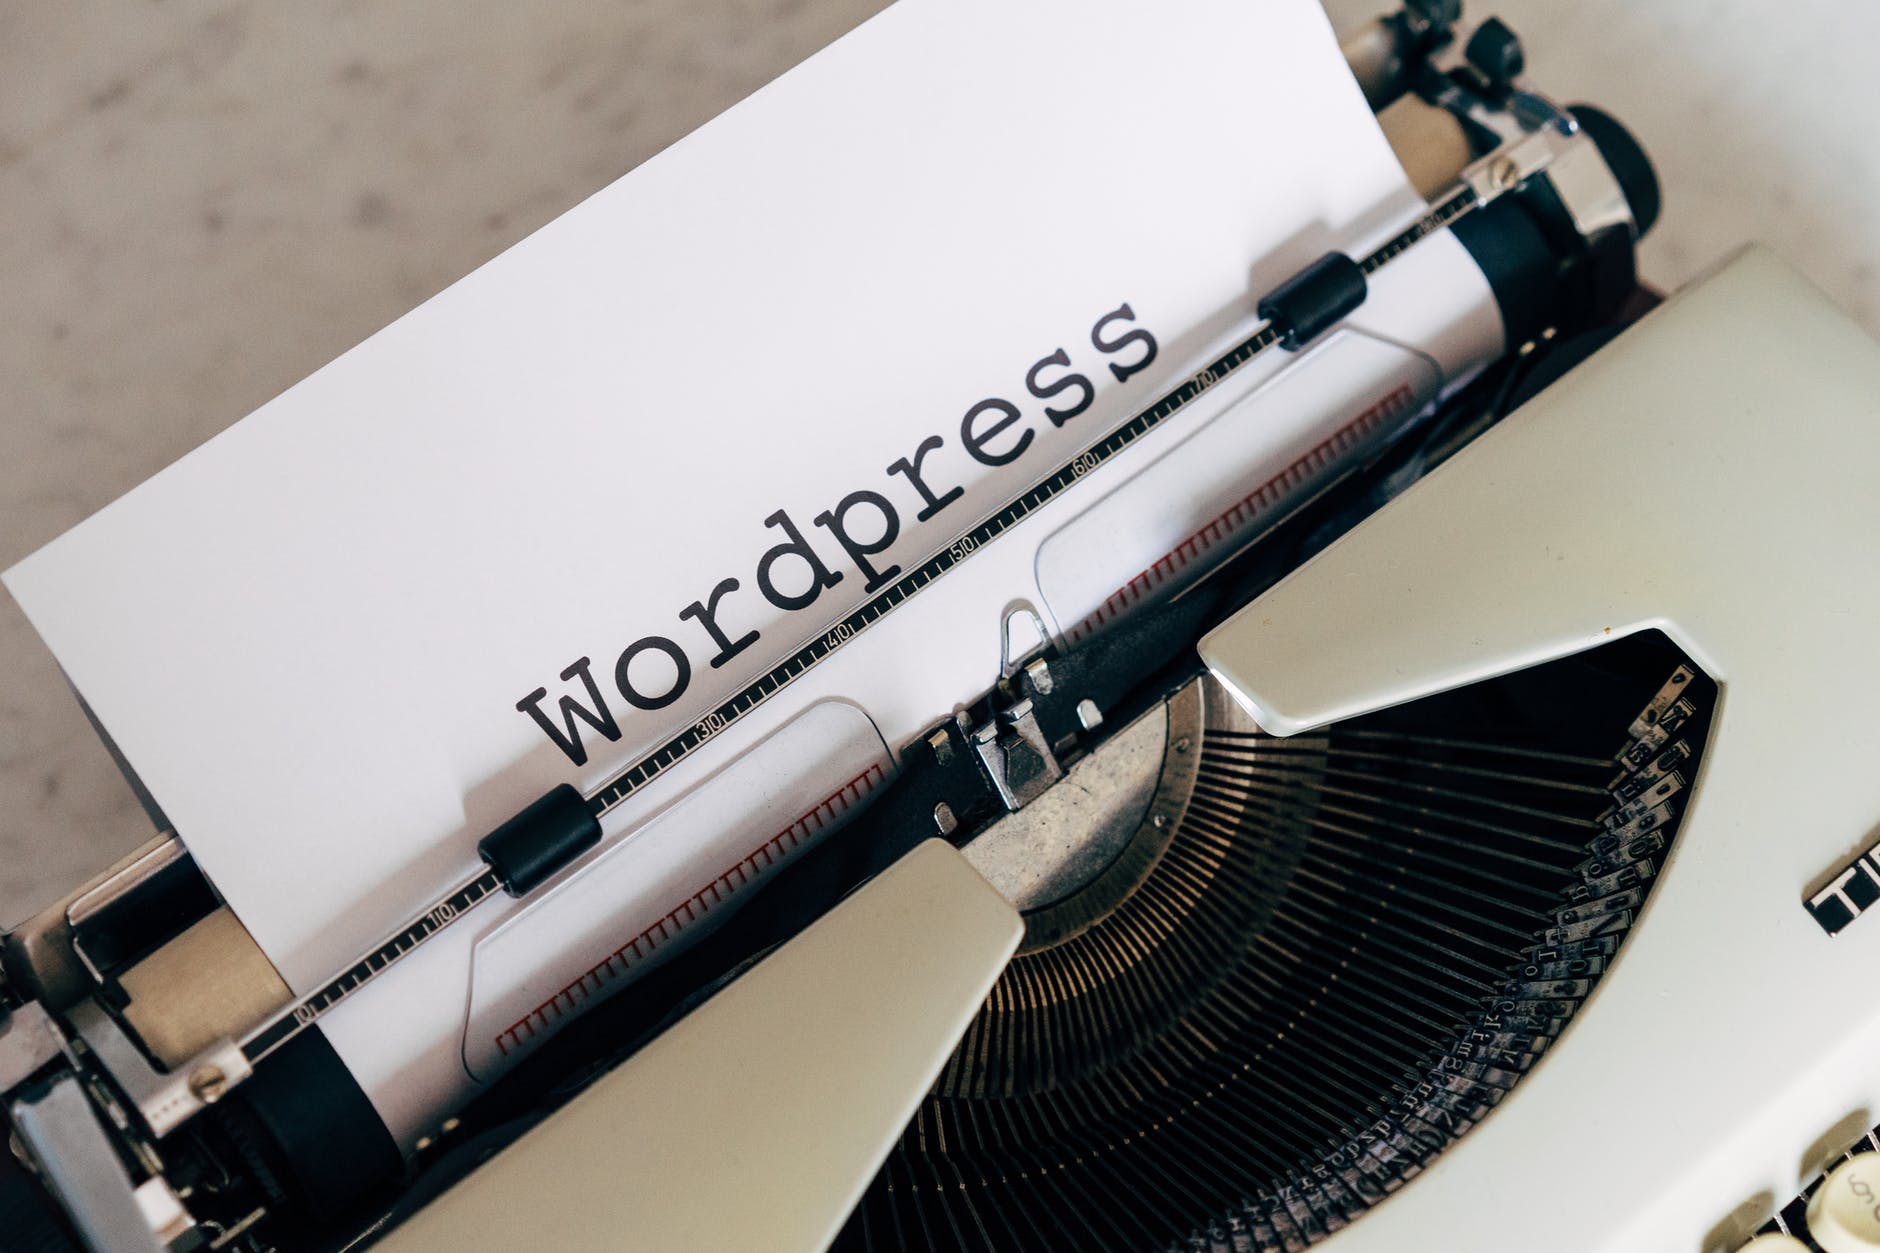 Come chiedere a WordPress di cancellare un blog per motivi legali